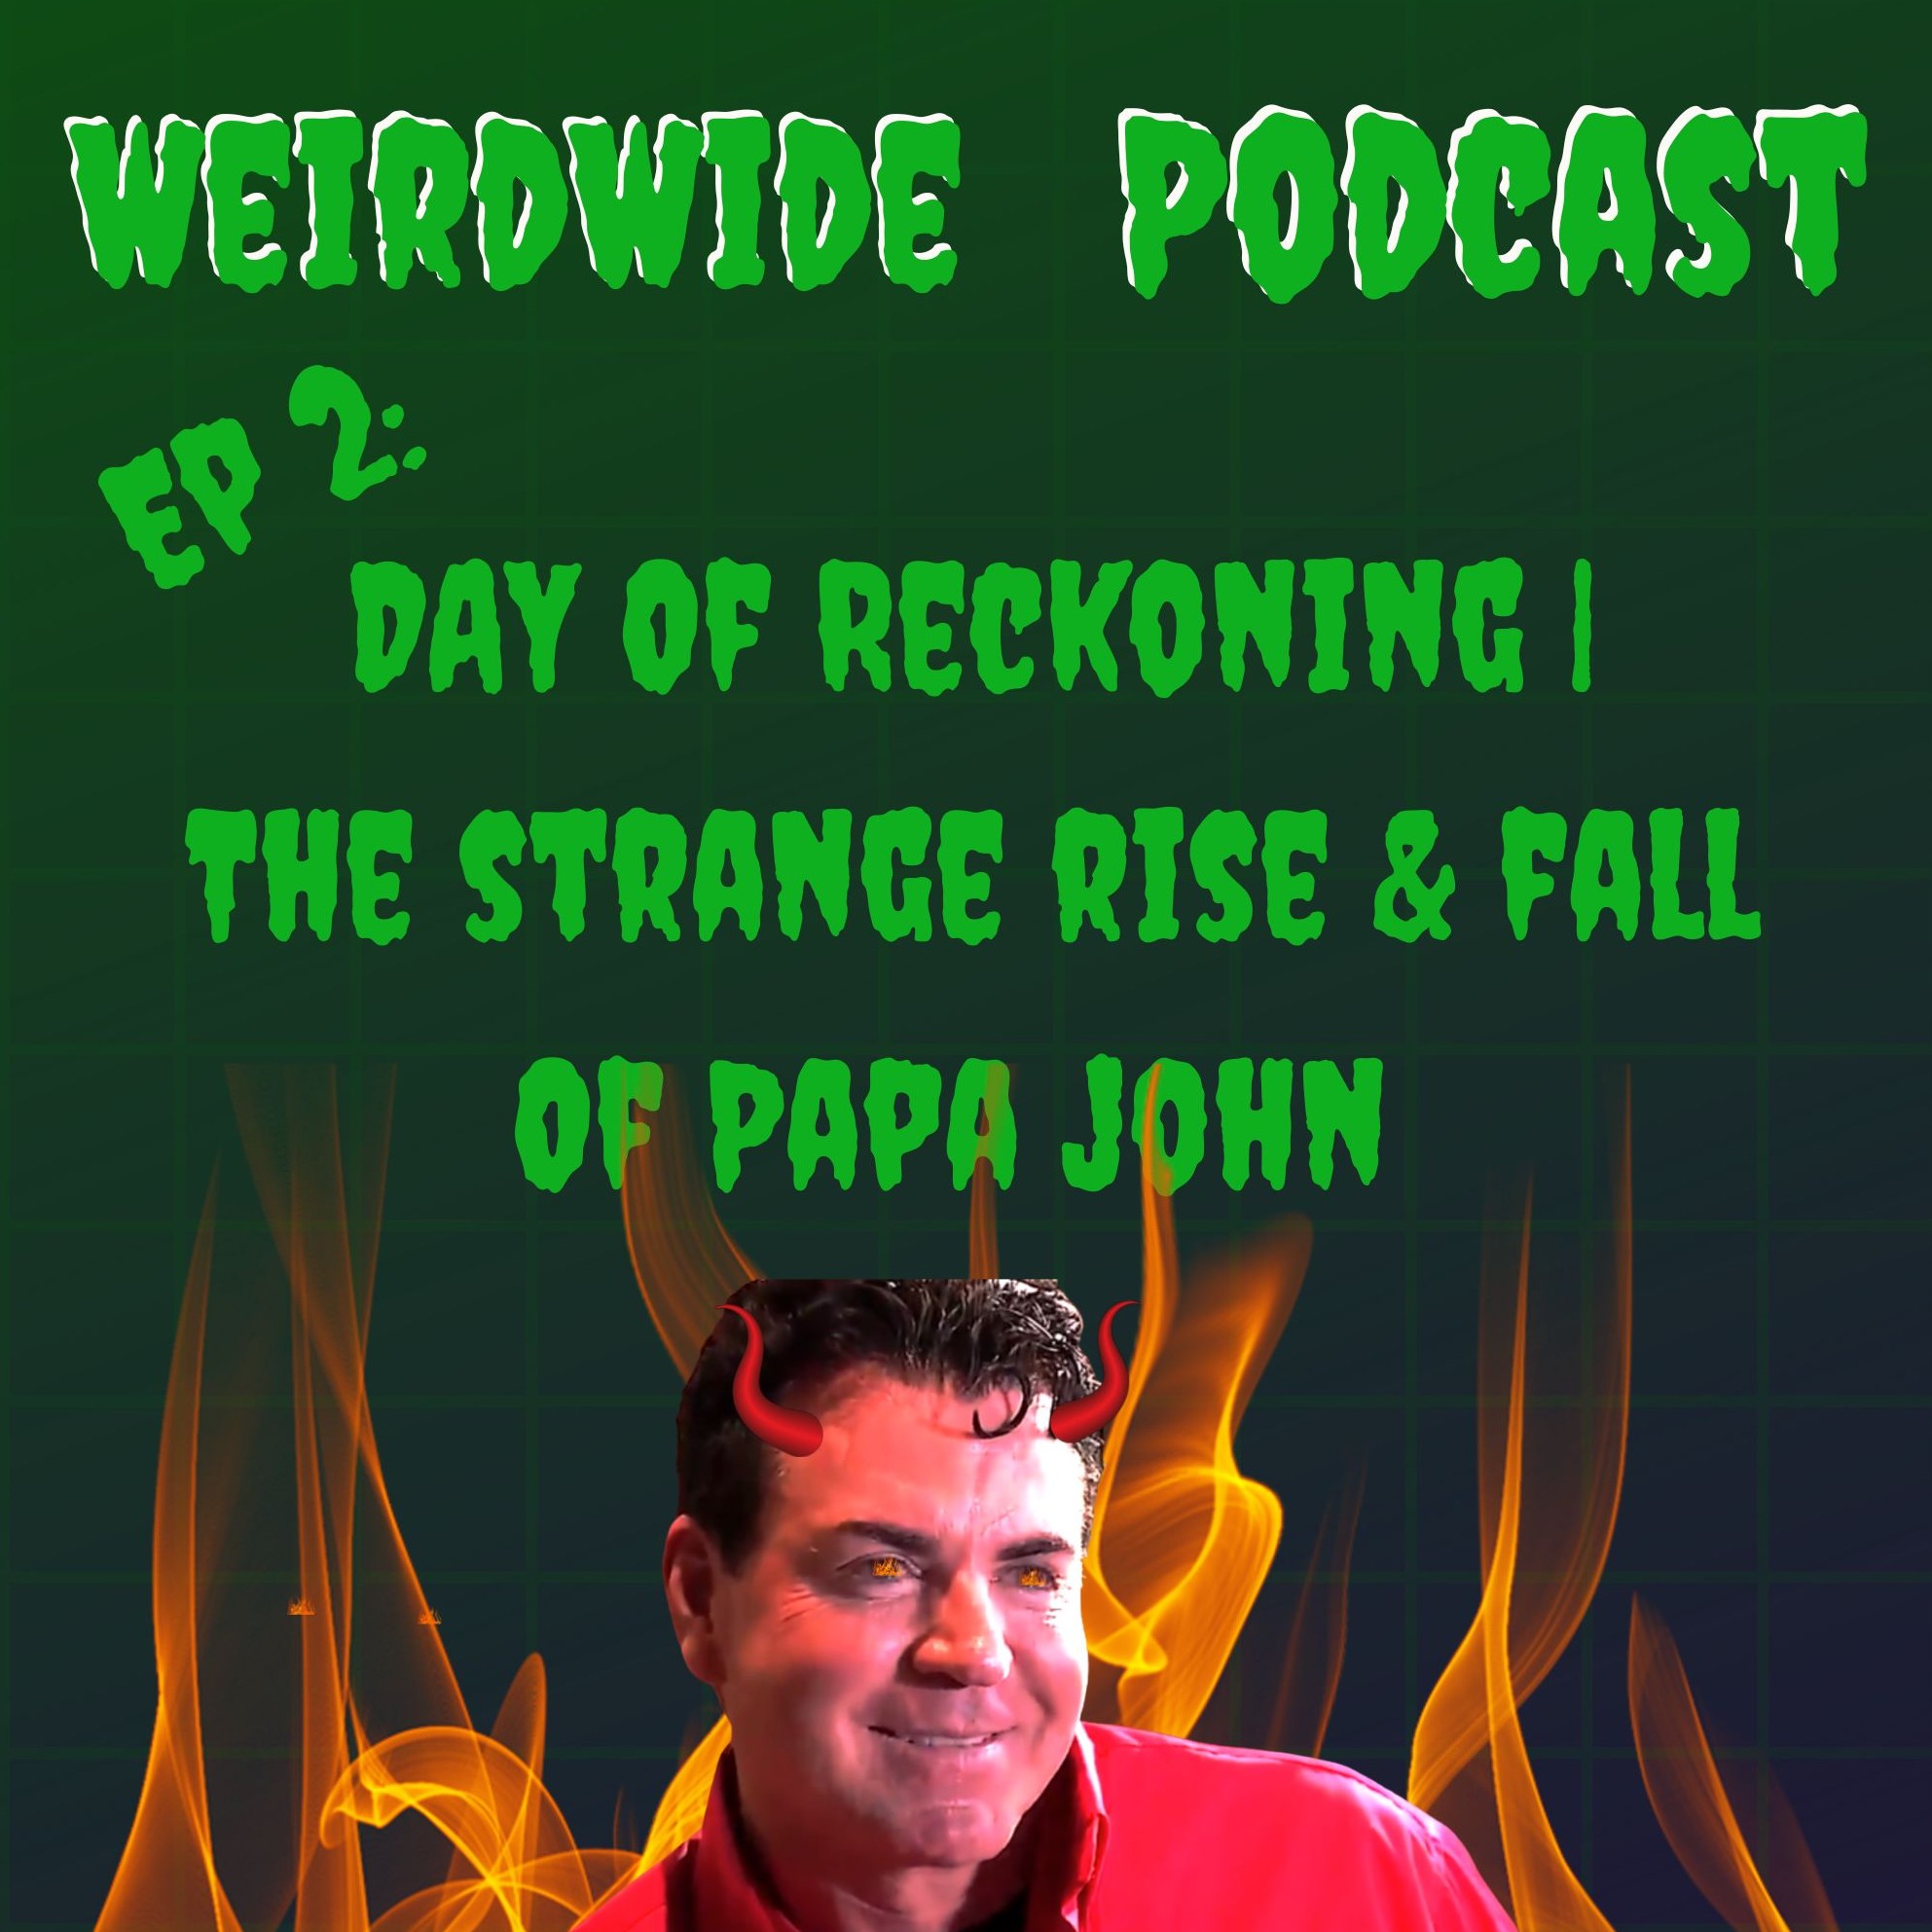 Day of Reckoning | The Strange Rise & Fall of Papa John